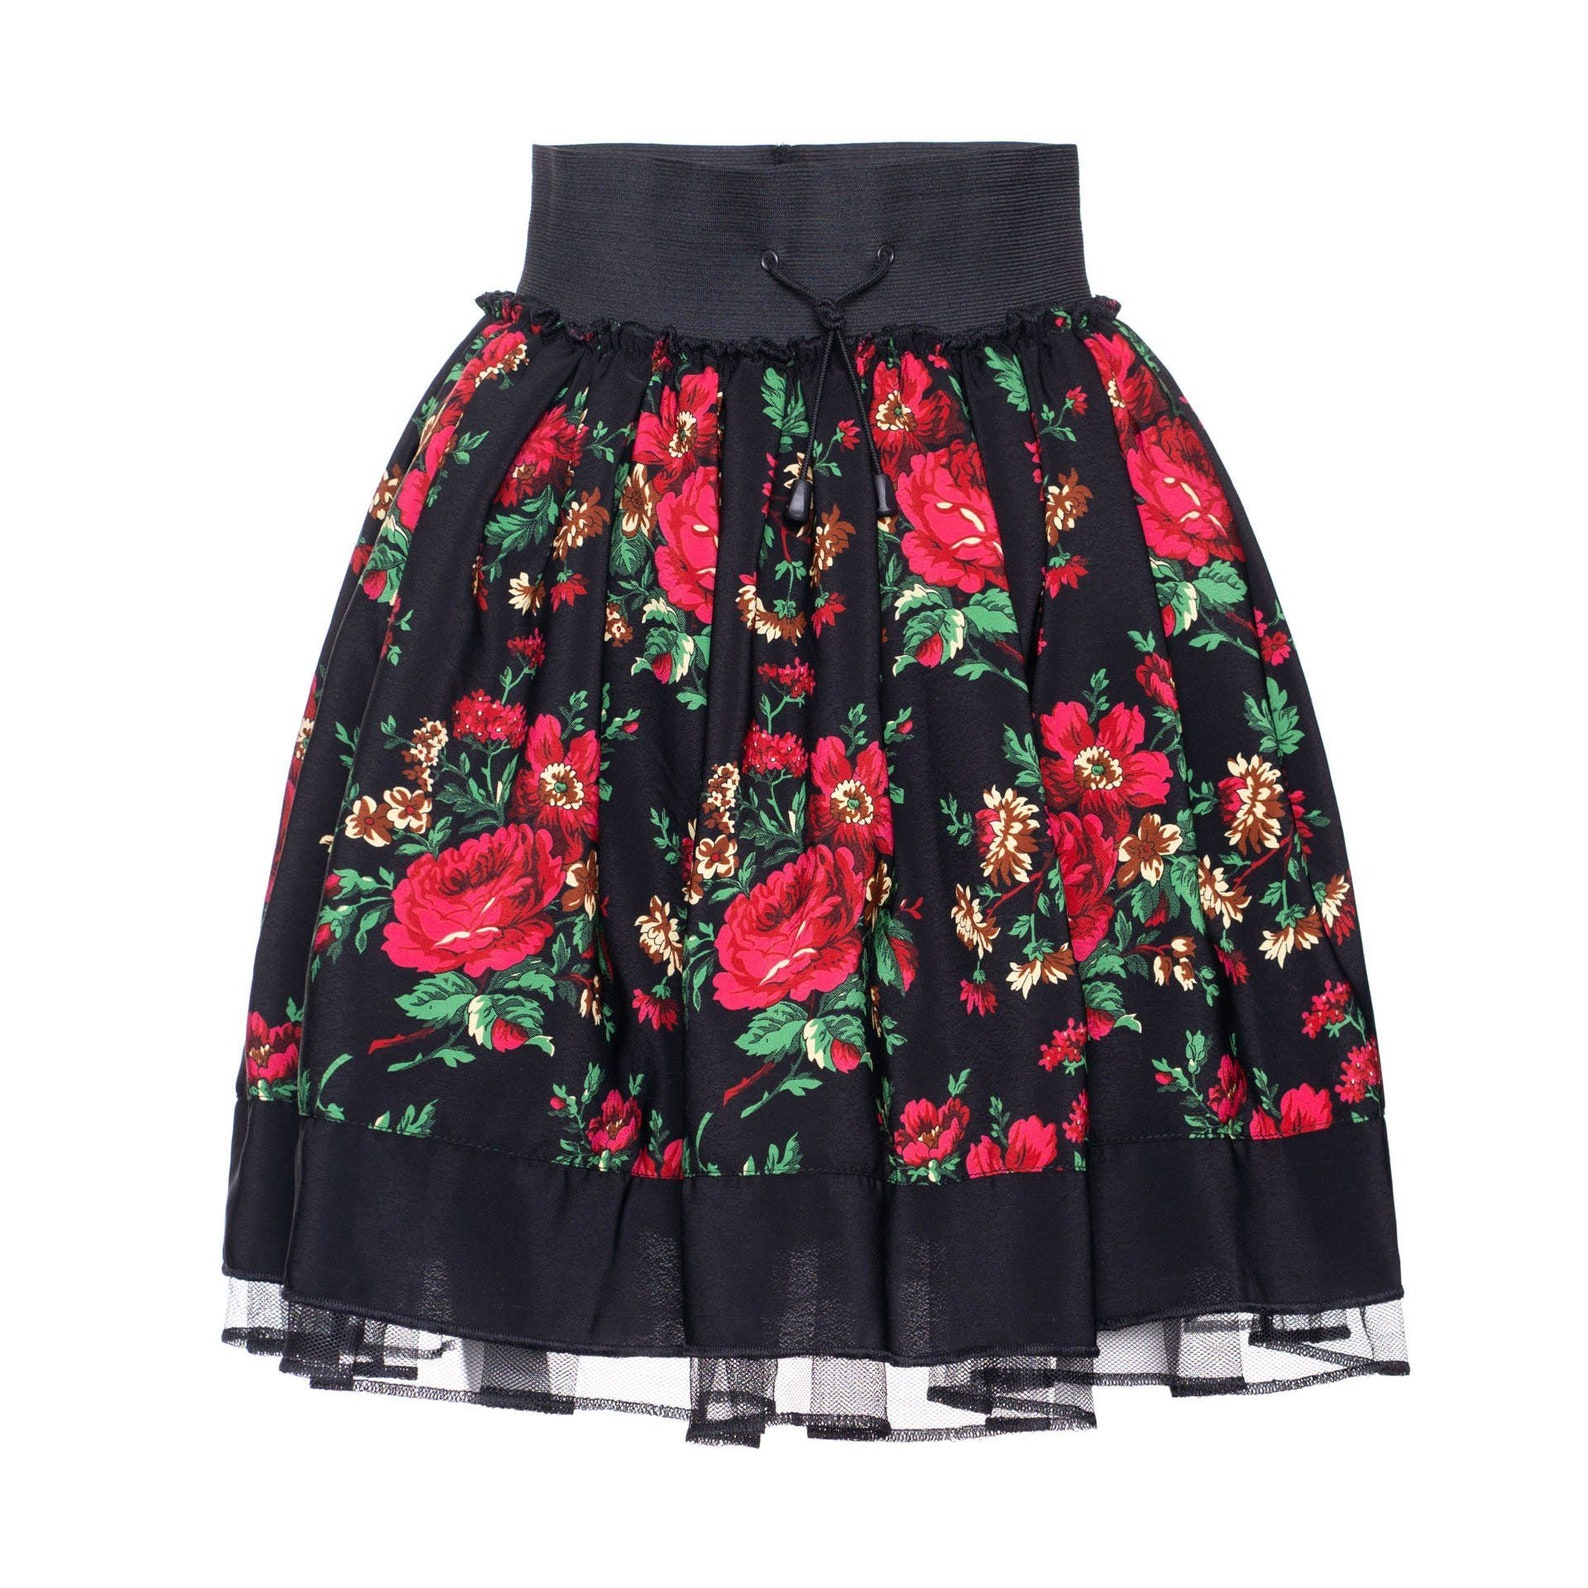 Womens polish folk skirt highlander FLOWERS tulle skirt | Etsy